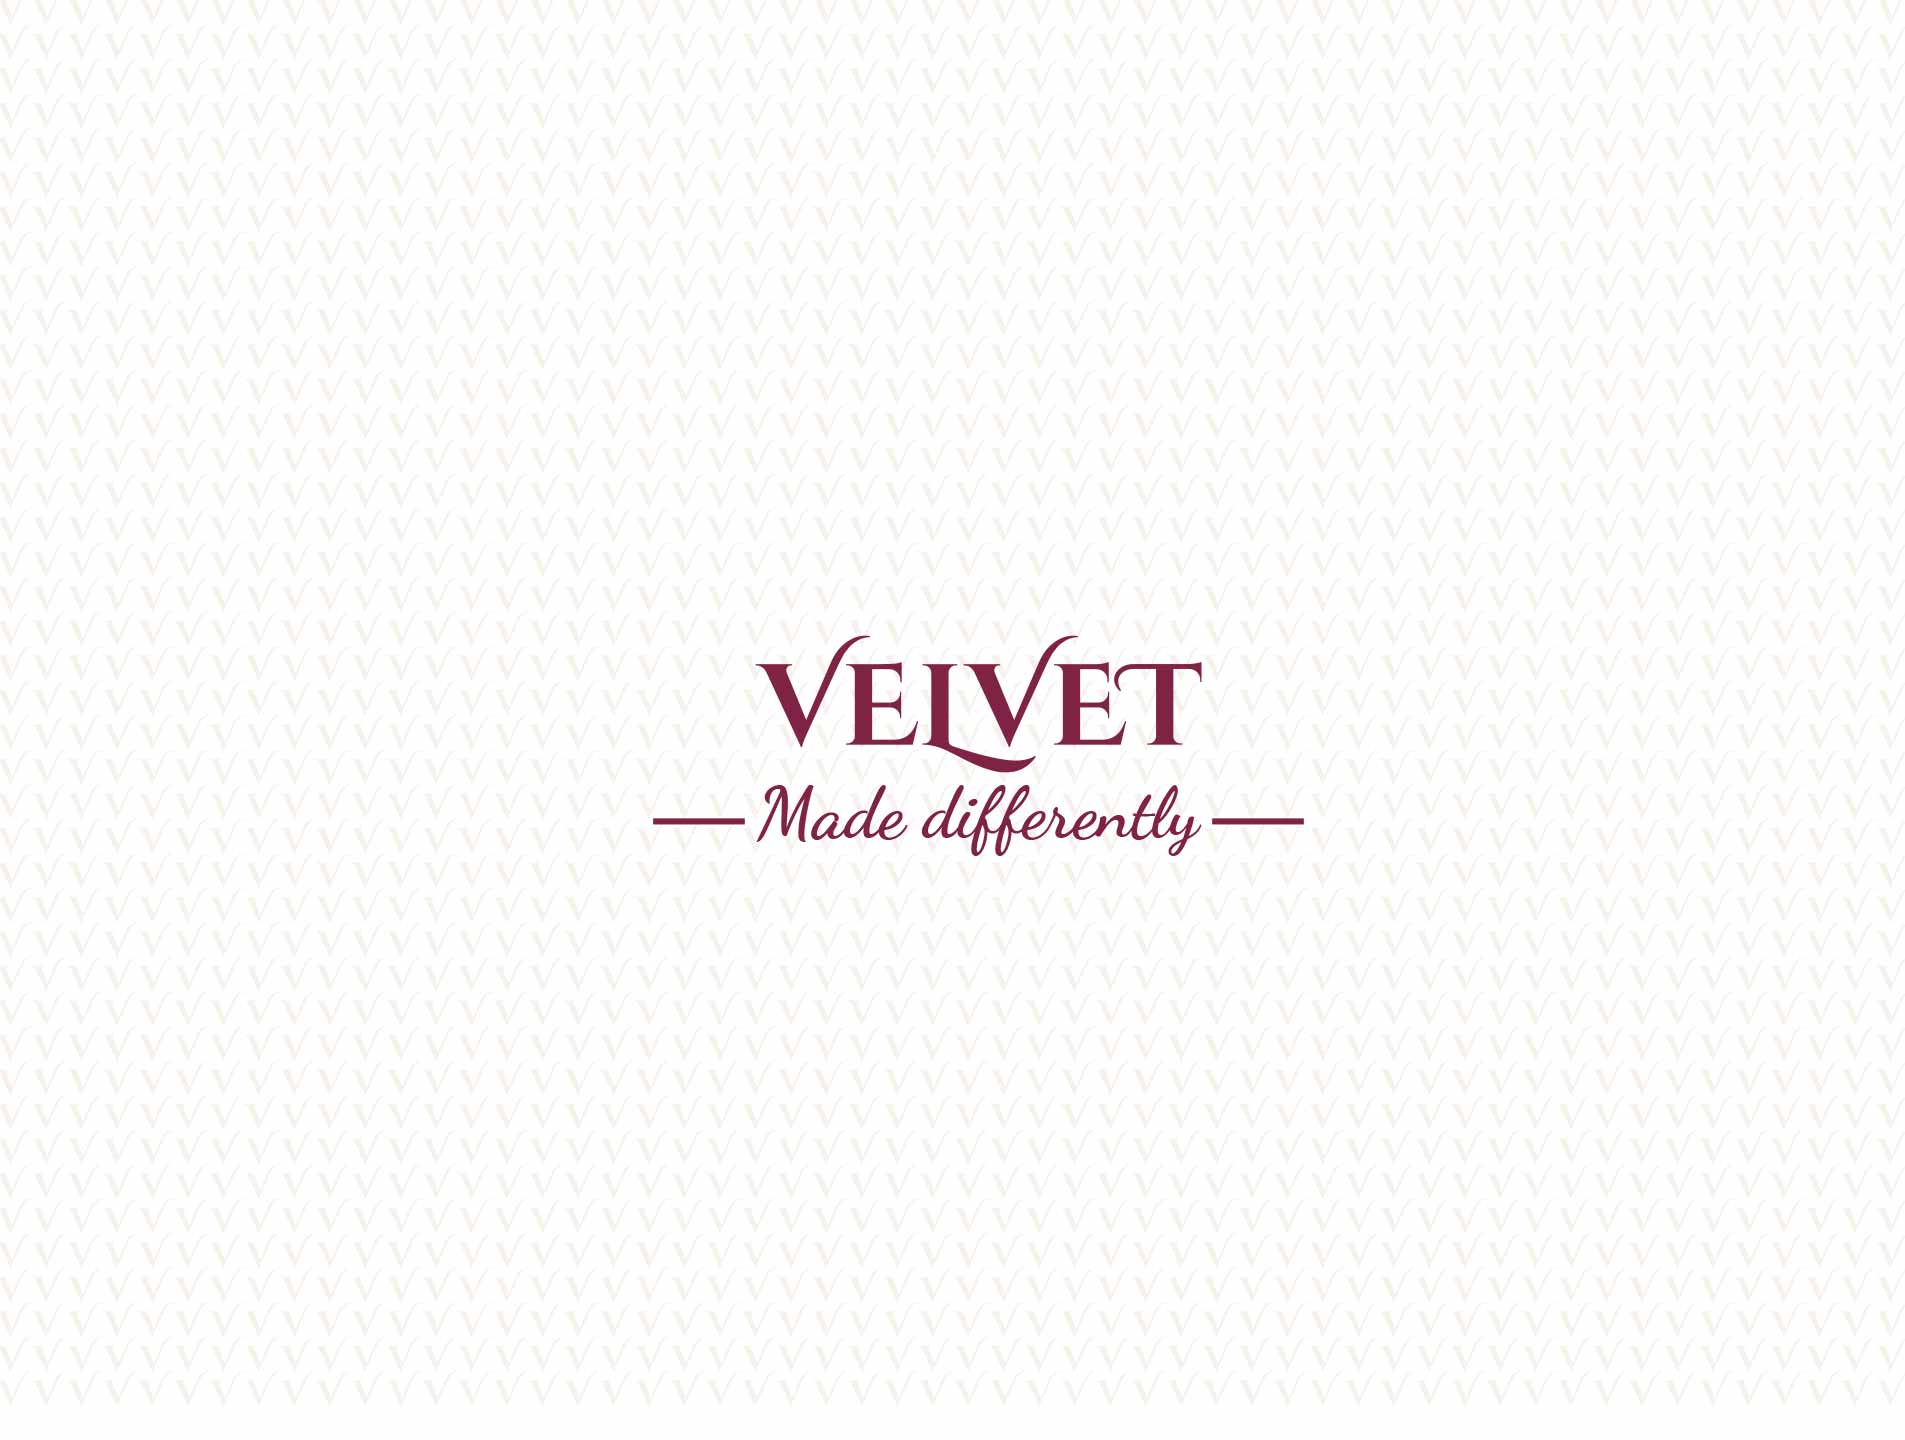 Brand design Velvet coffee